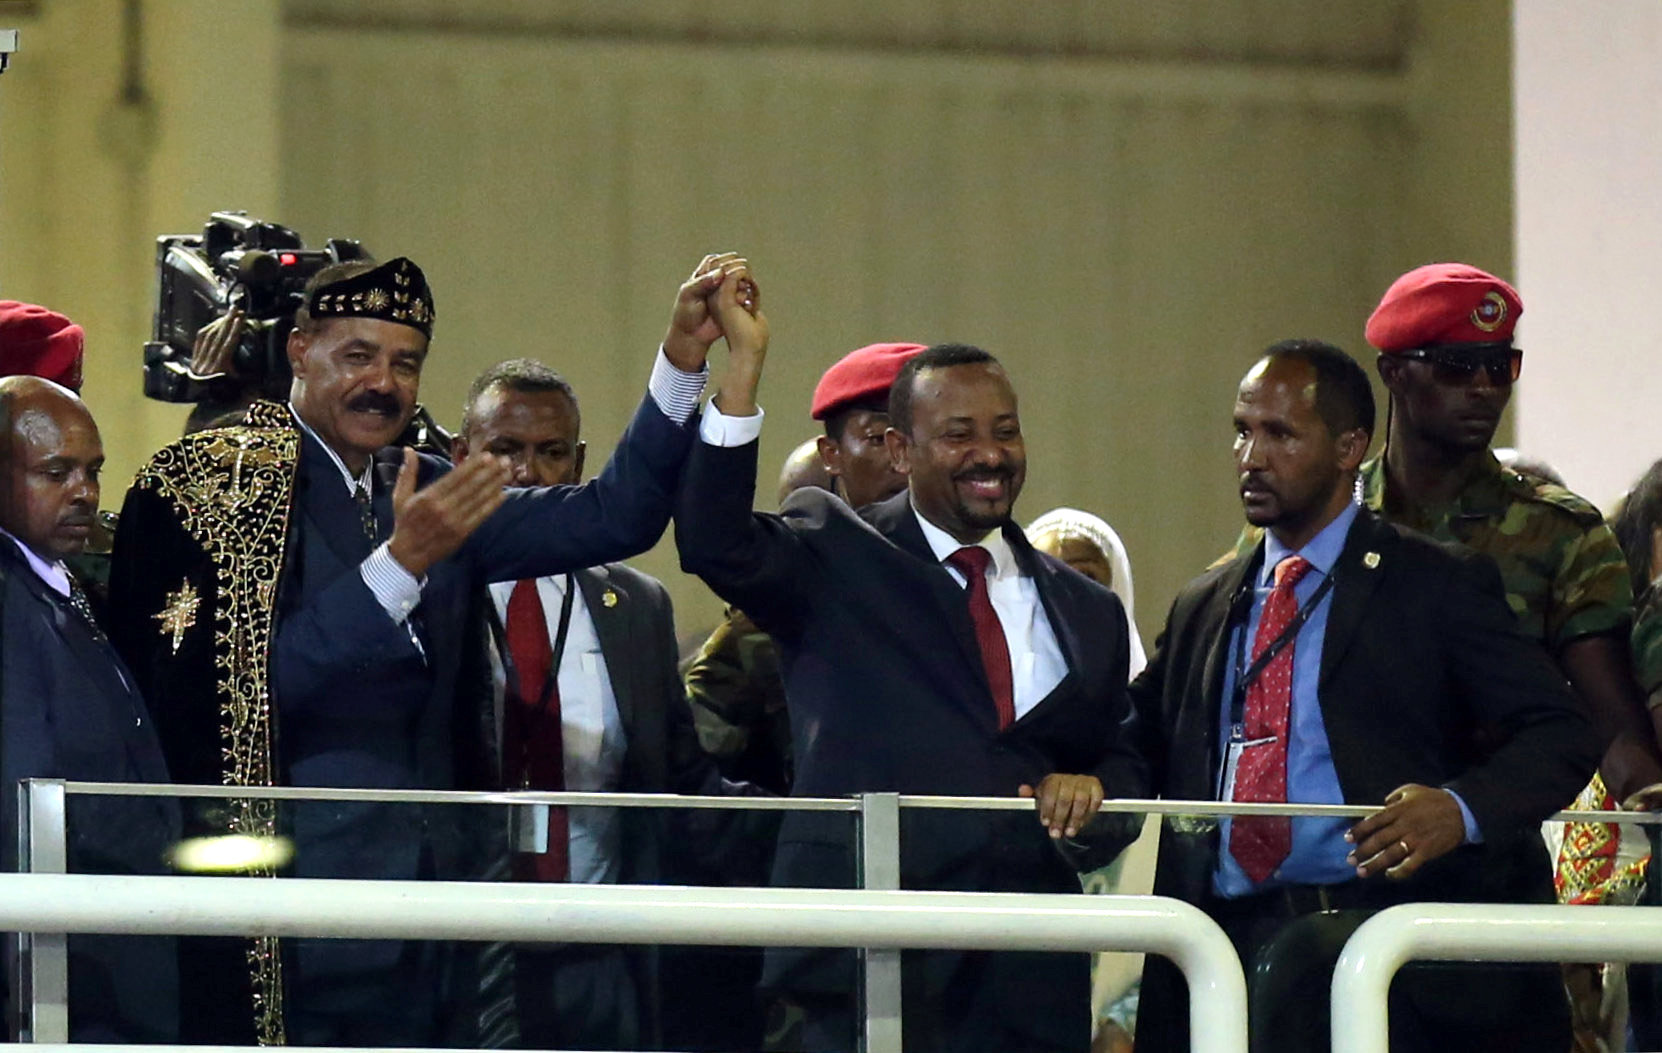 رئيس الوزراء الإثيوبي أبي أحمد ورئيس إريتريا إسياس أفورقي خلال احتفال موسيقي في أديس أبابا، 15 يوليو 2018. رويترز